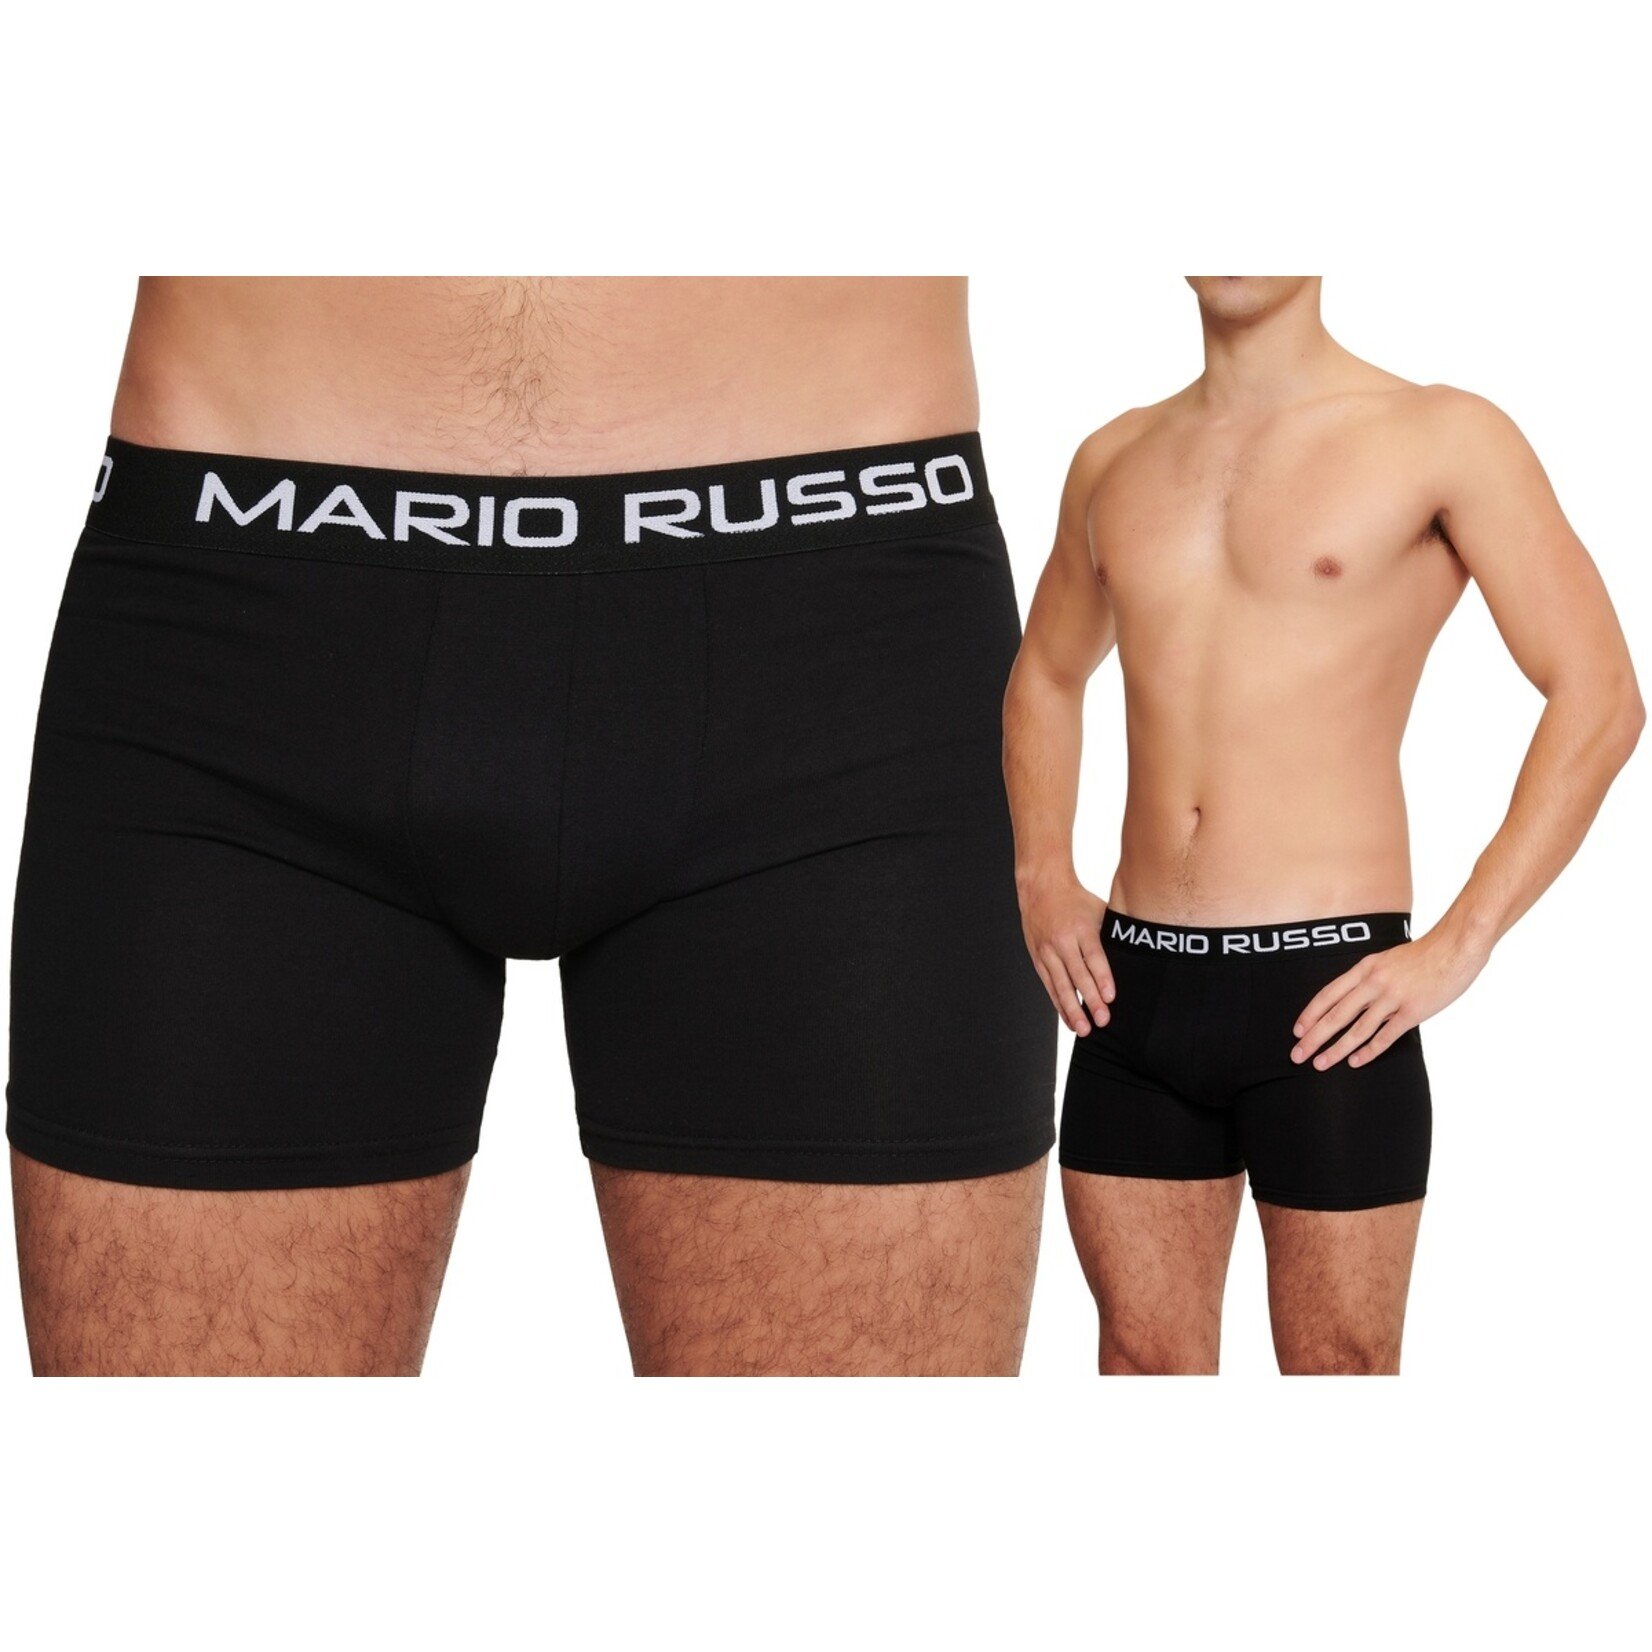 Mario Russo Mario Russo Boxershorts - Set van 10 Heren Boxers